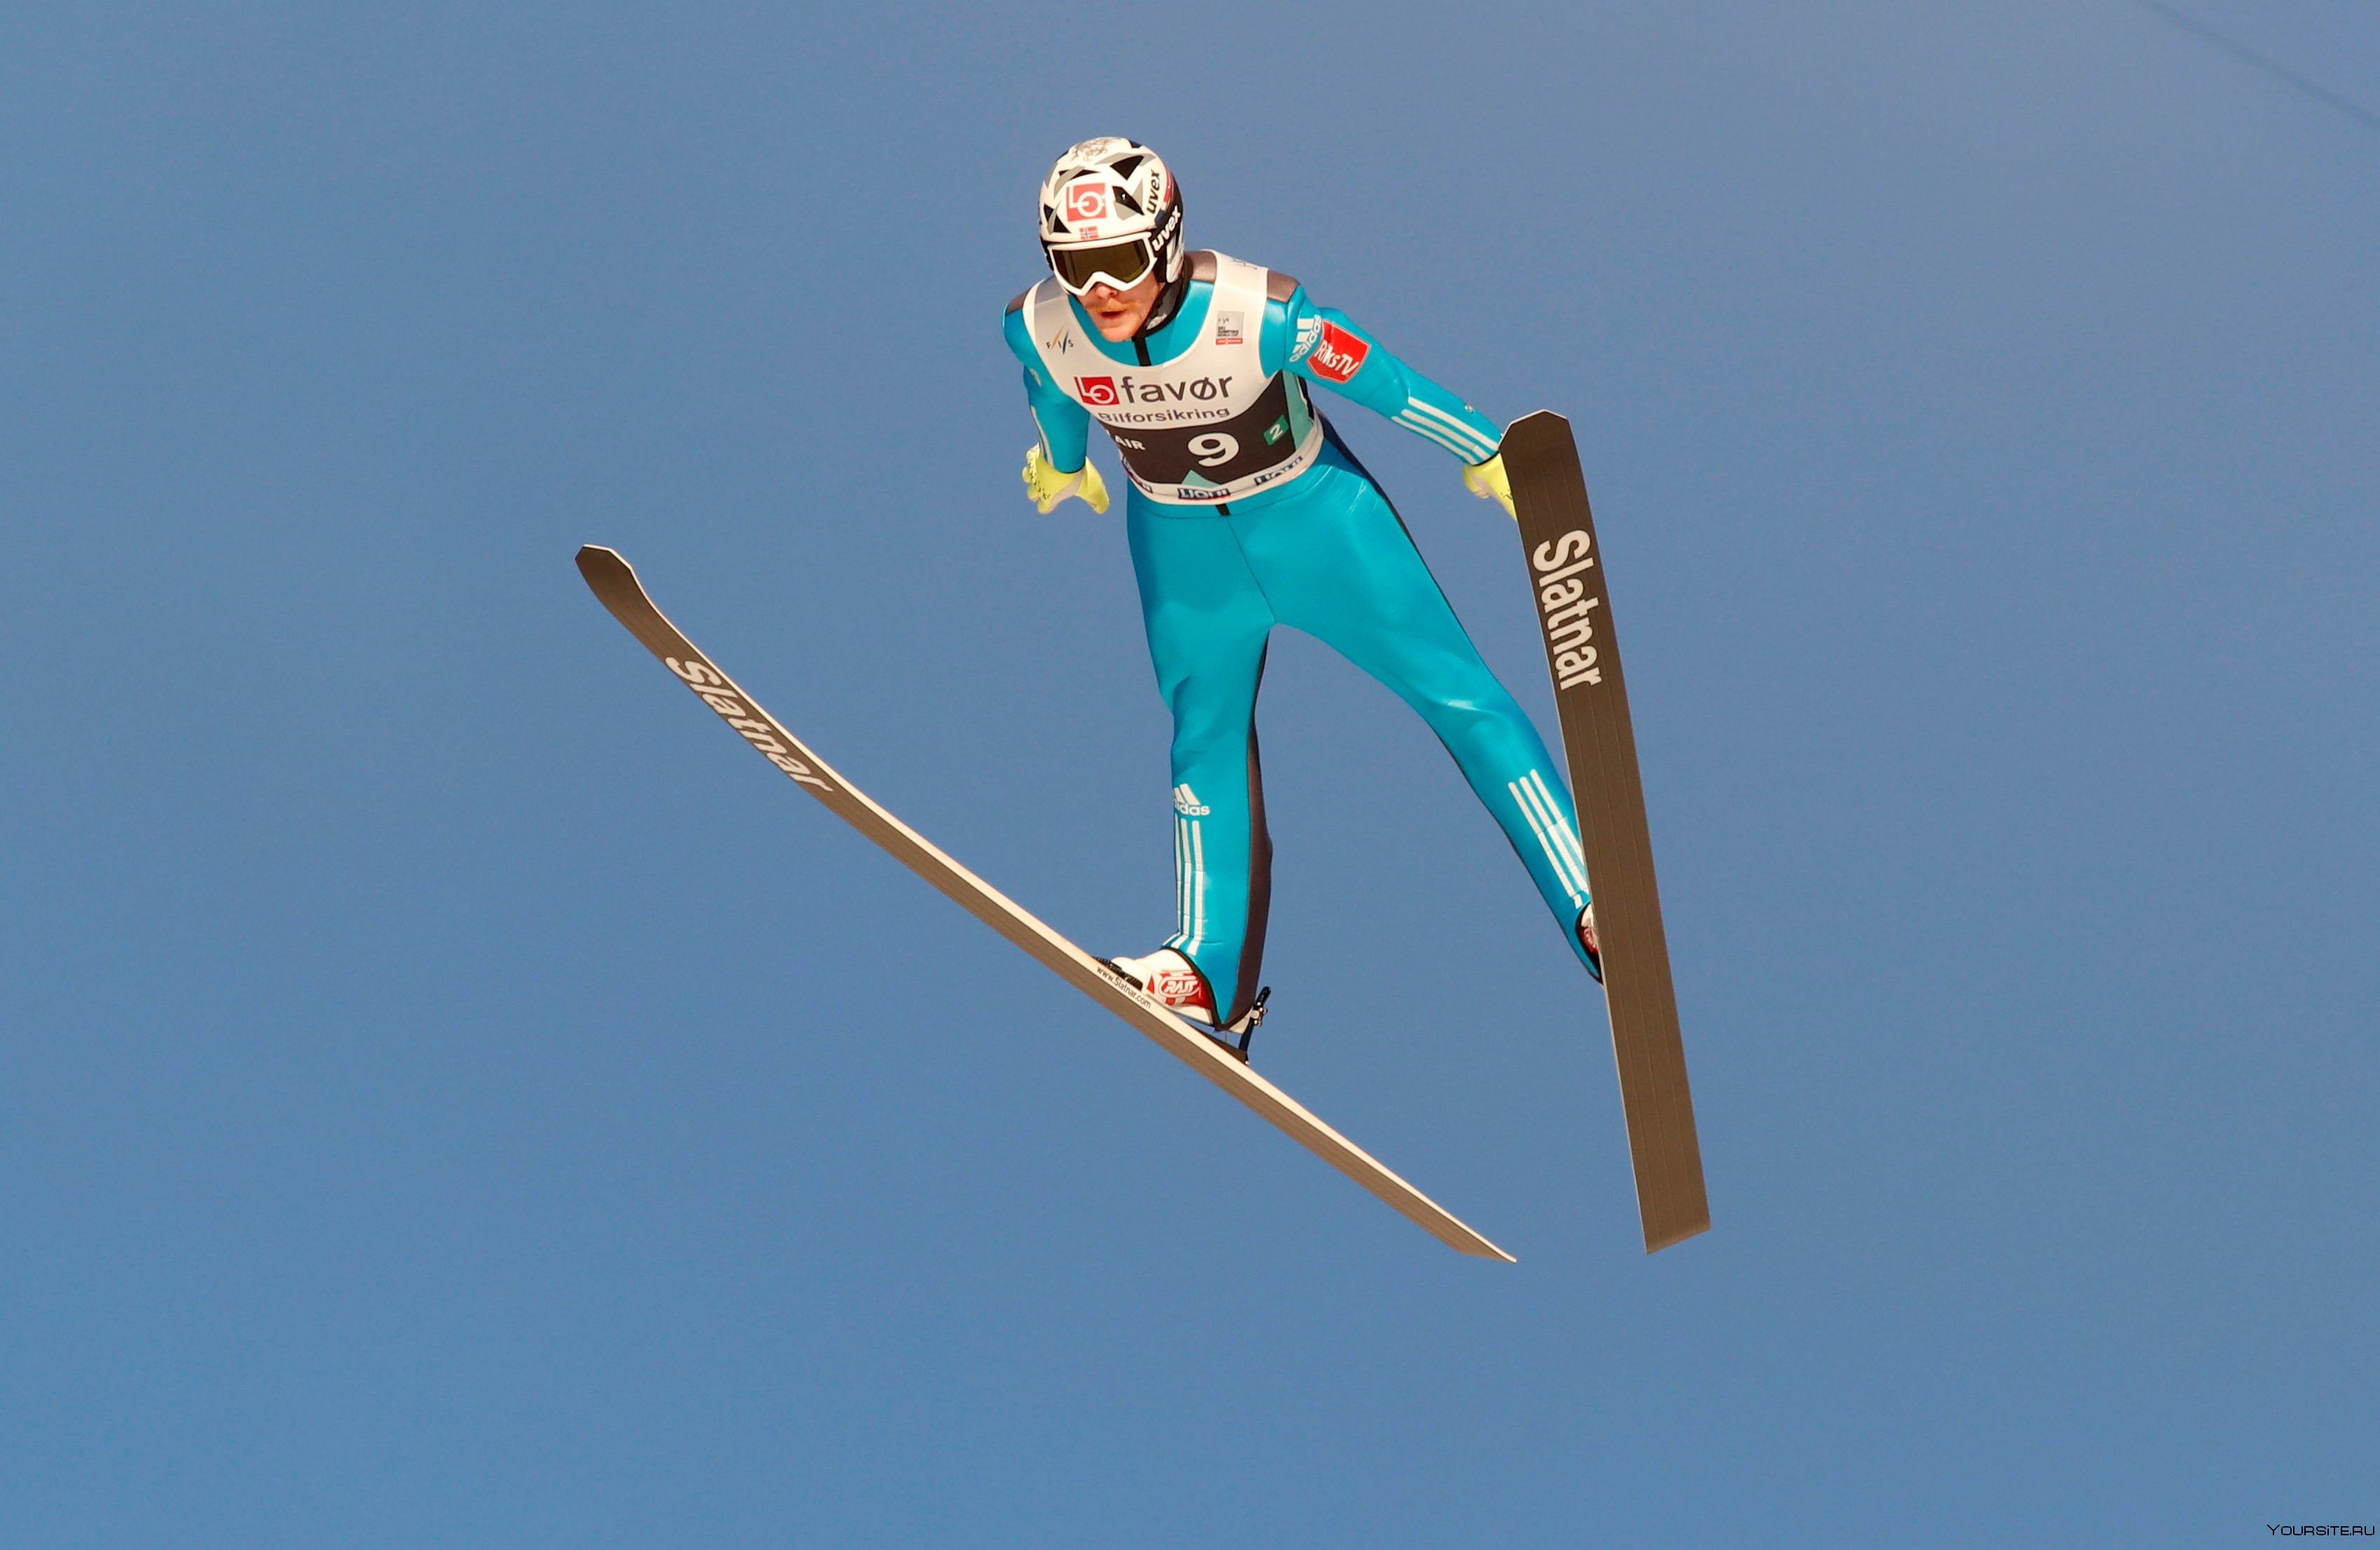 Первый прыжок с трамплина на лыжах